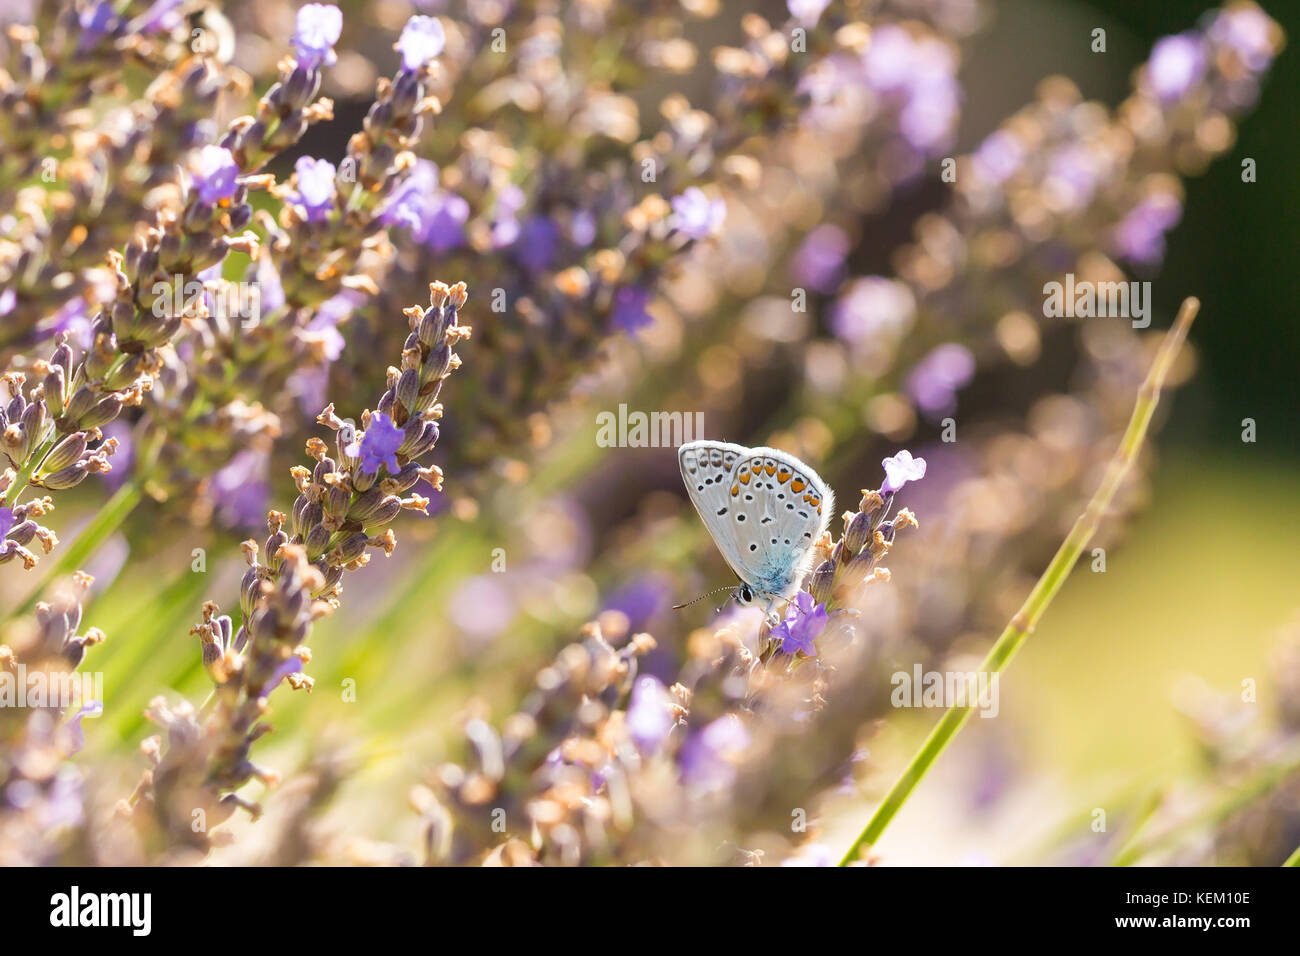 Macho azul común (mariposa polyommatus icarus) volando de flor en flor, mientras que la polinización y alimentar el néctar en violeta de la lavanda. Foto de stock